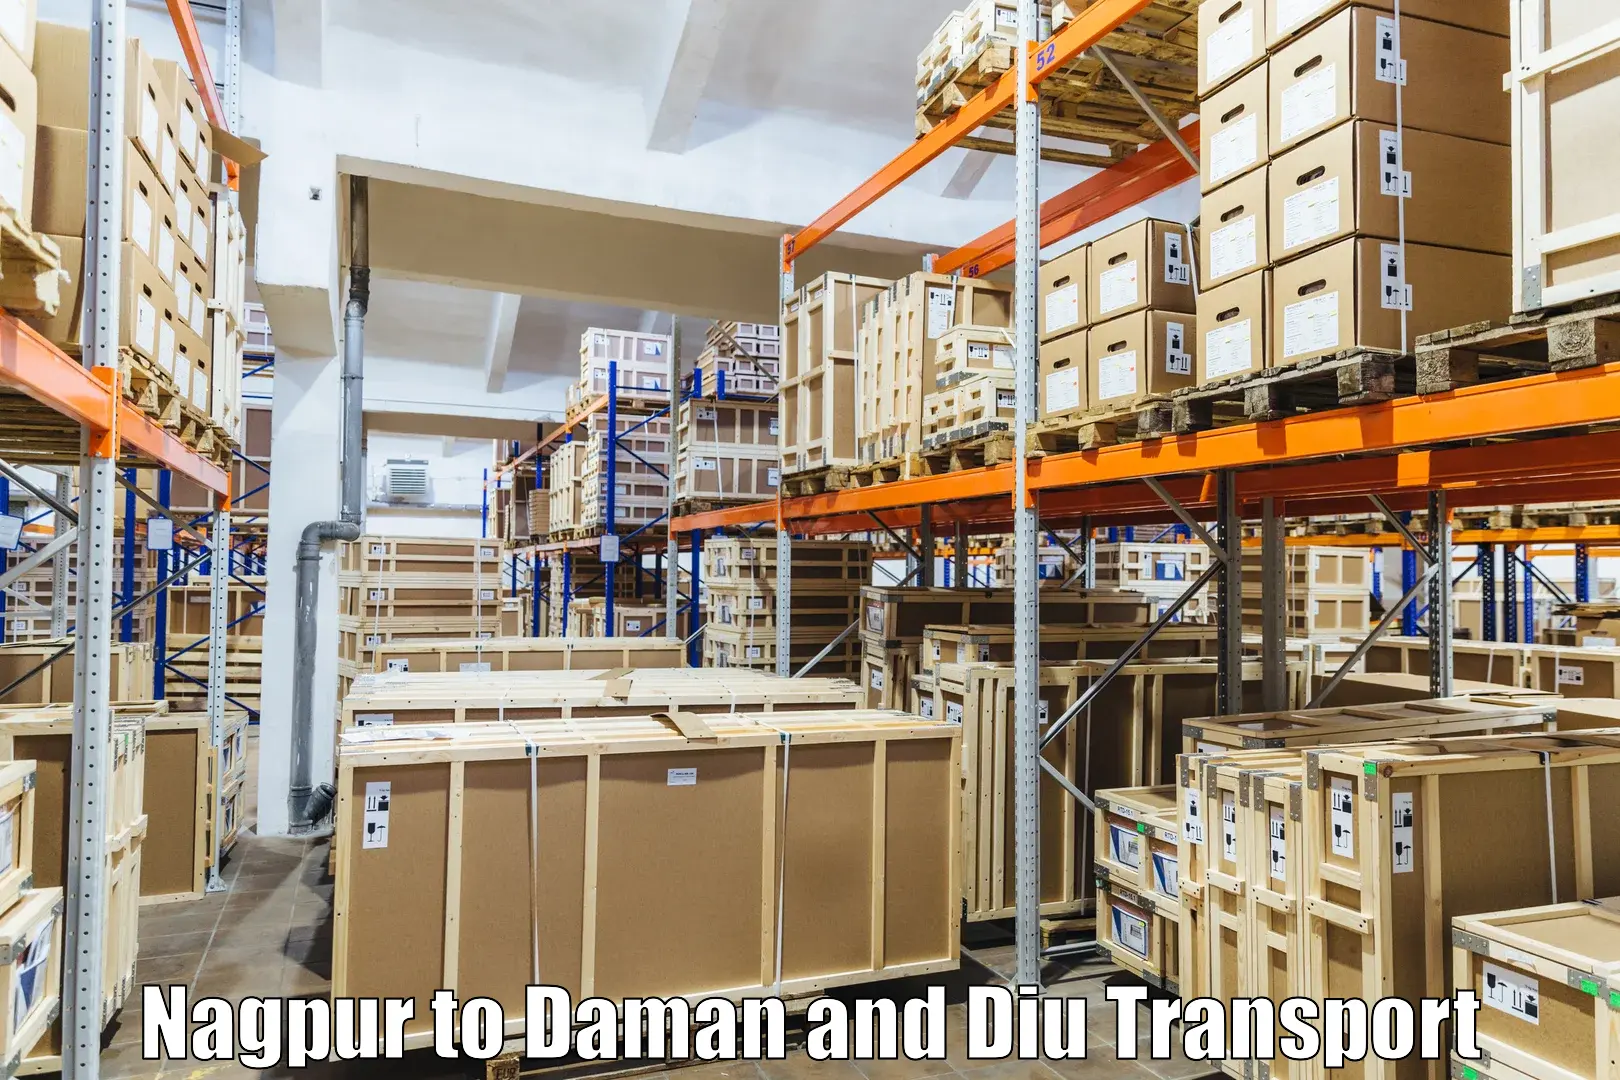 Daily transport service Nagpur to Daman and Diu